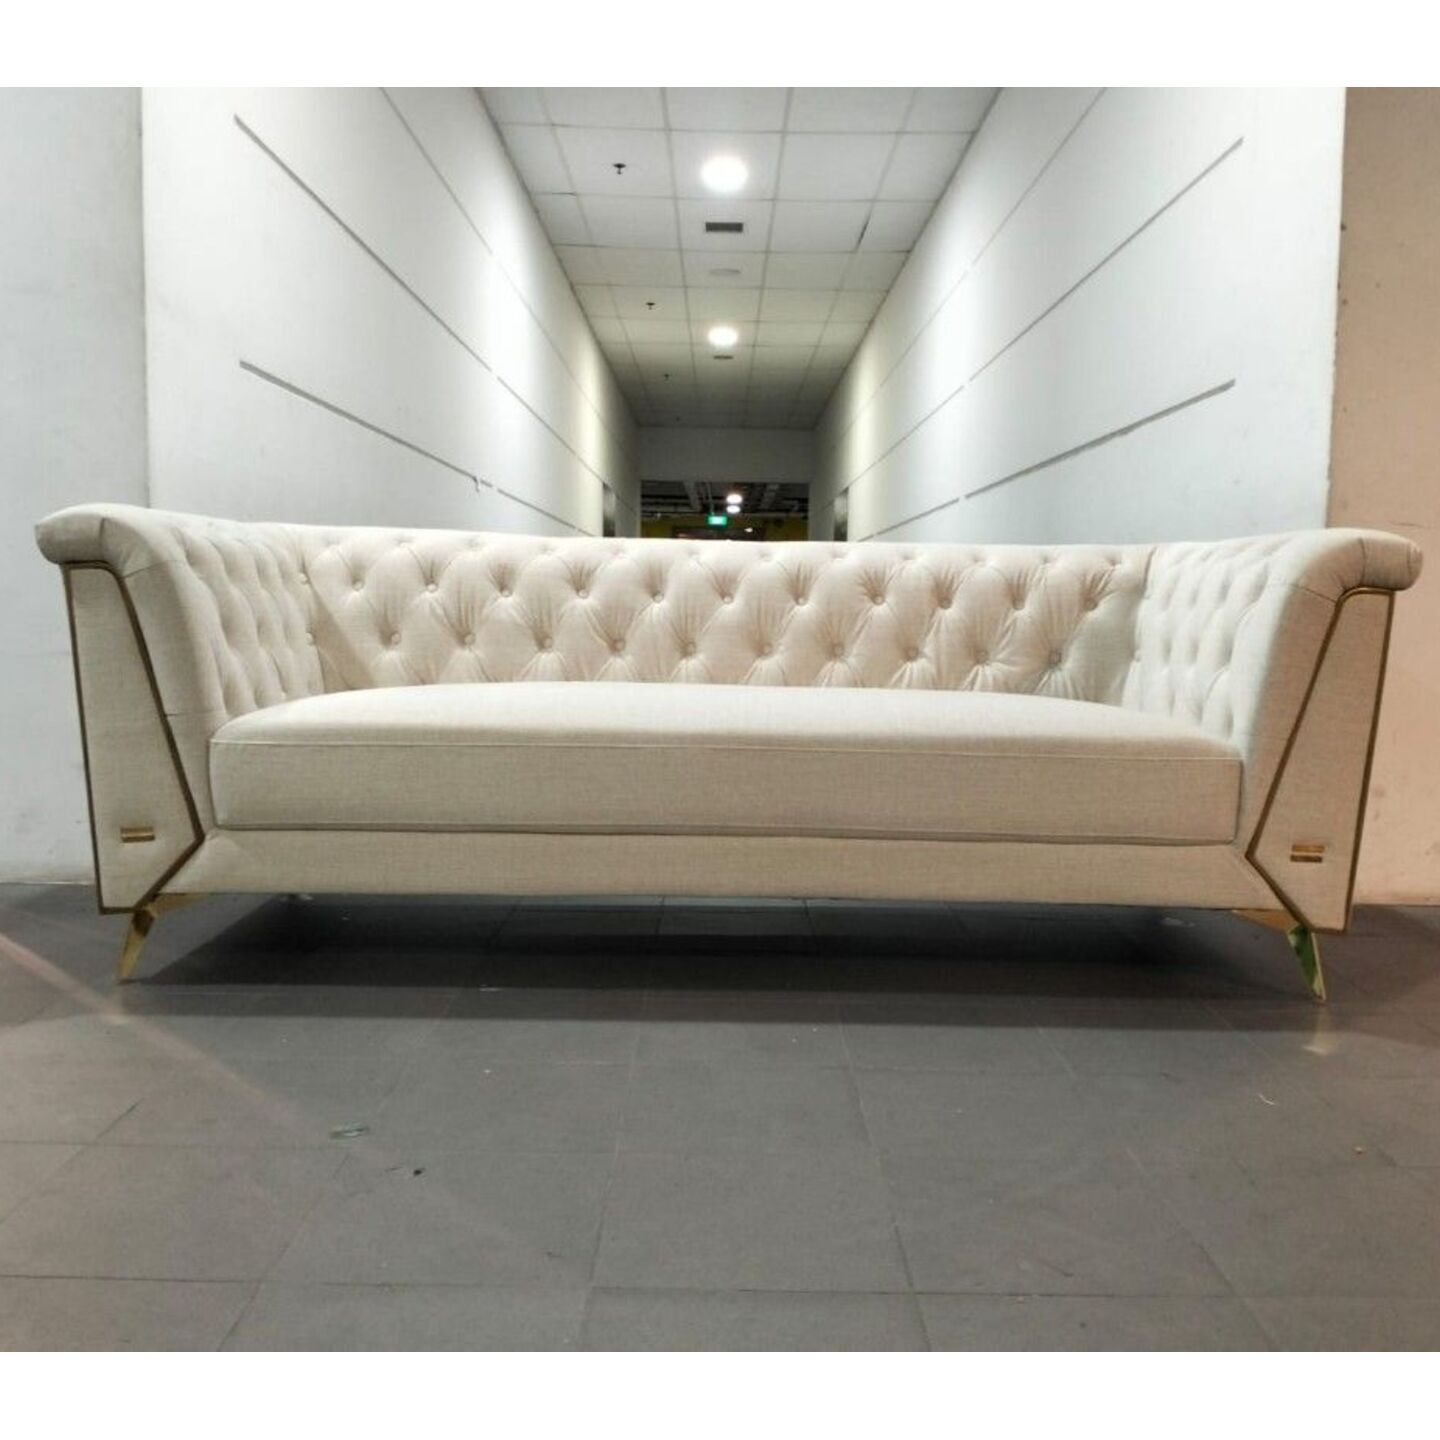 CAT FRIENDLY ROMANO GRANDEUR 3 Seater Sofa in CREAM WHITE TECH FABRIC 50707-P1